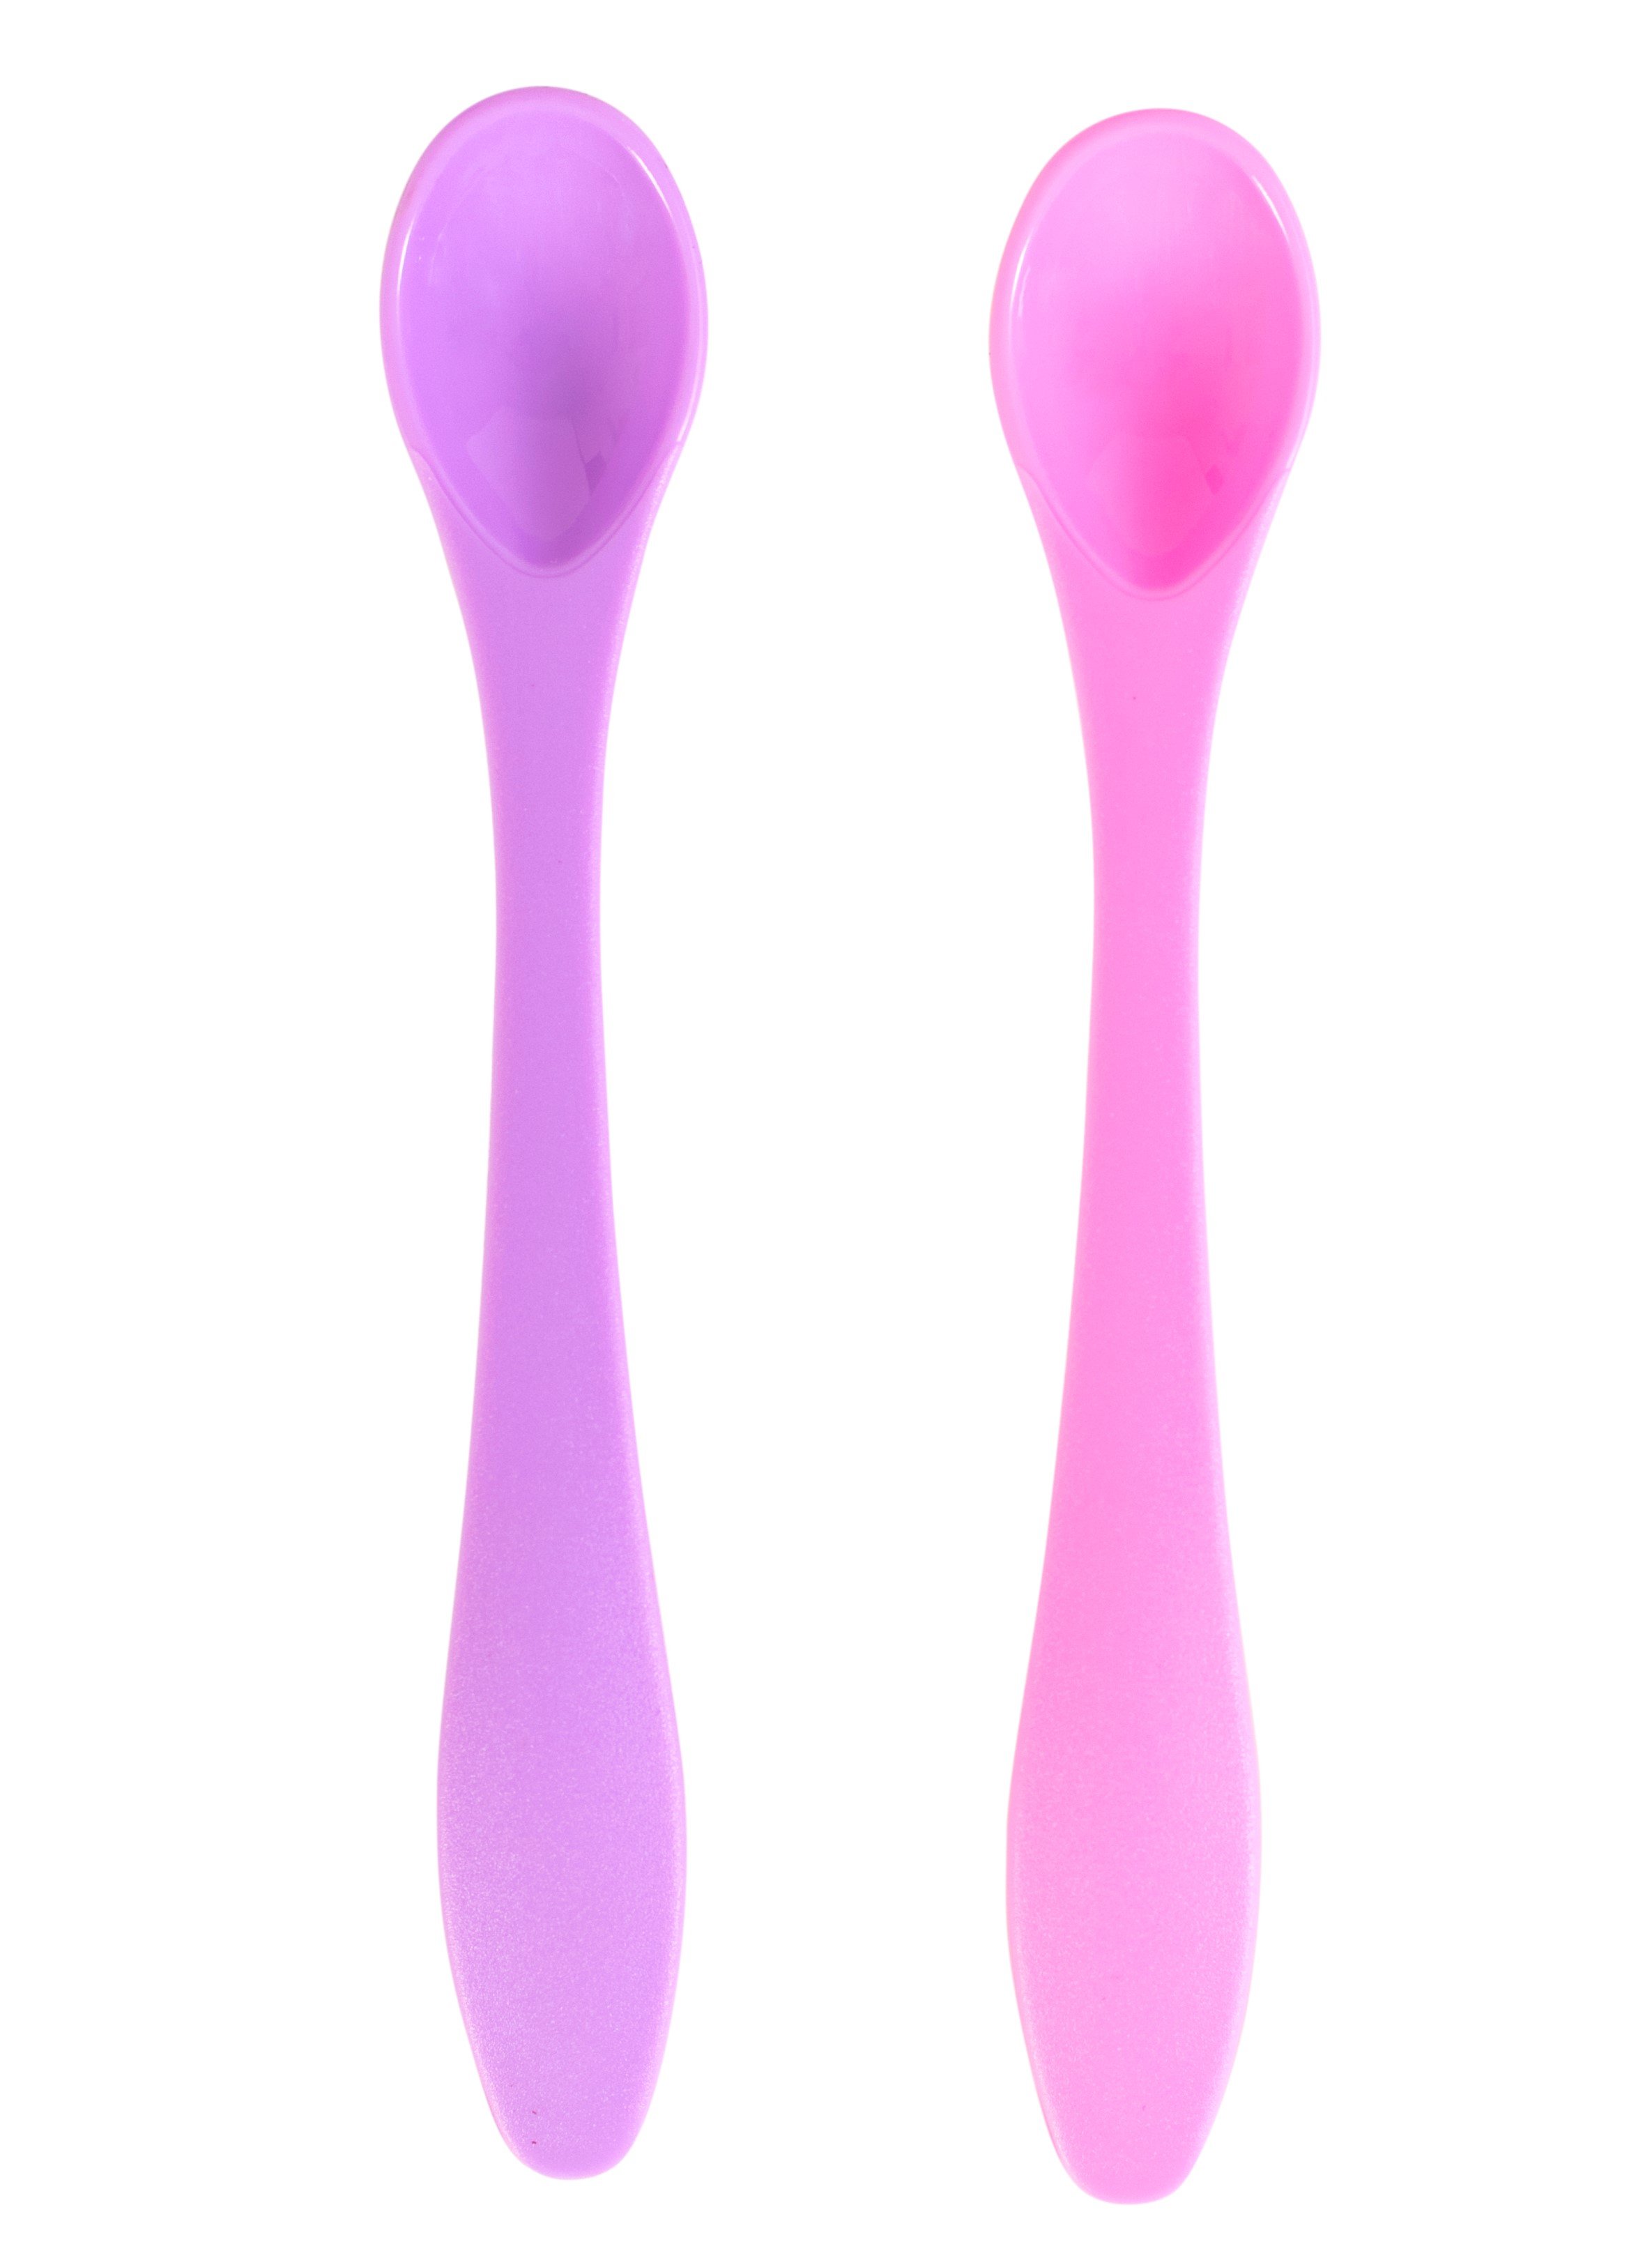 Ложечки для годування Baby Team, рожевий і фіолетовий, 2 шт. (6101_розовый_и_фиолетовый) - фото 1